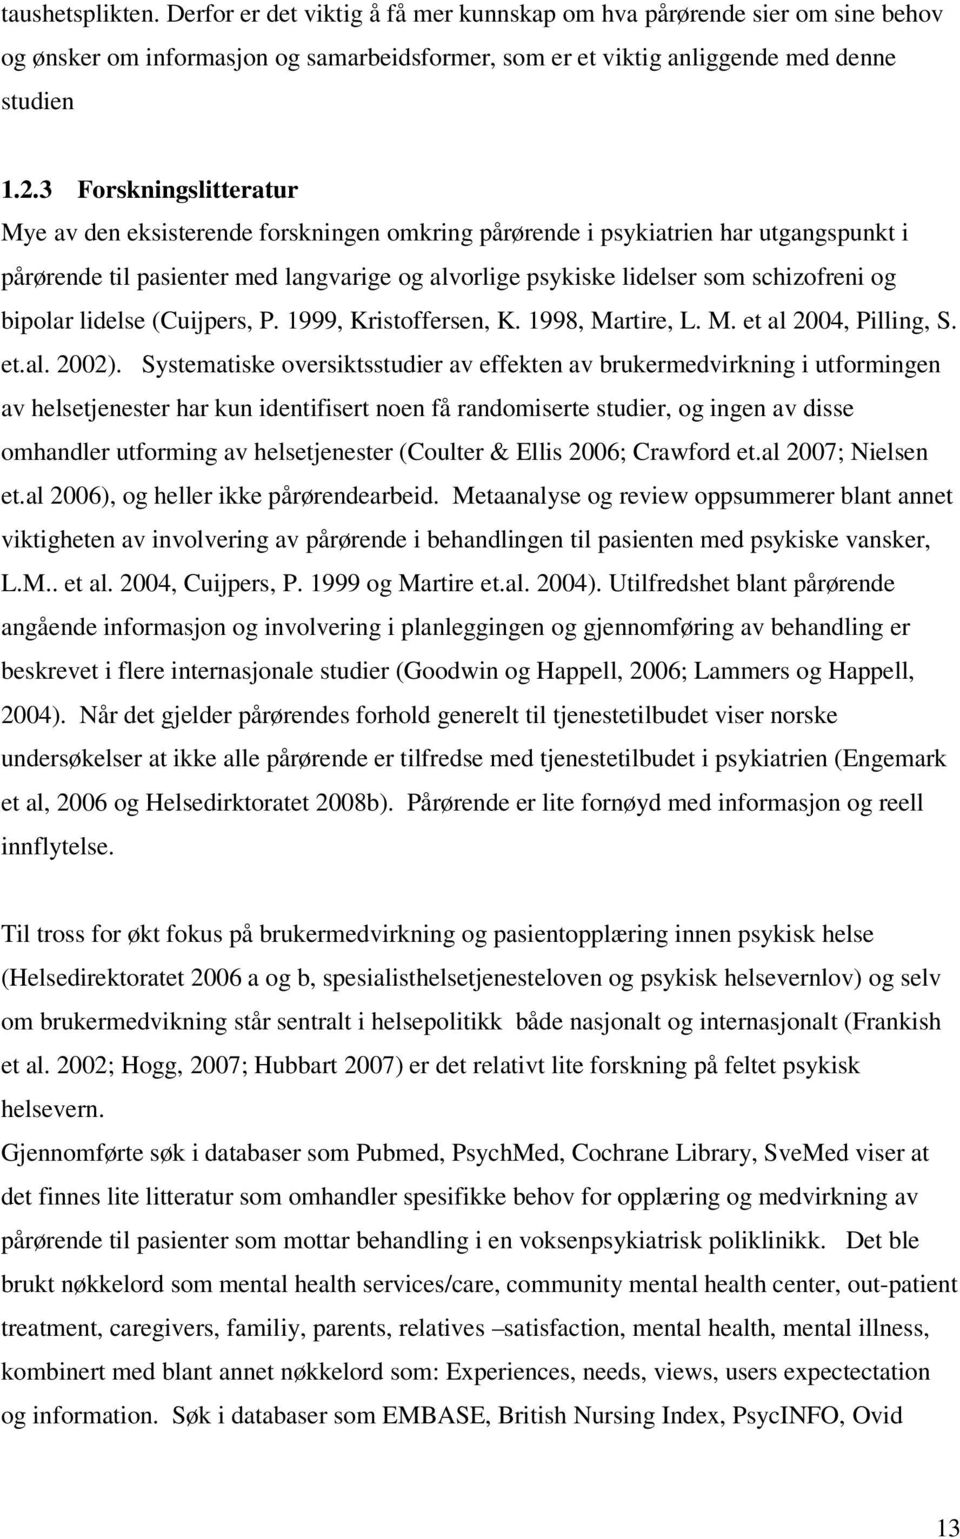 bipolar lidelse (Cuijpers, P. 1999, Kristoffersen, K. 1998, Martire, L. M. et al 2004, Pilling, S. et.al. 2002).